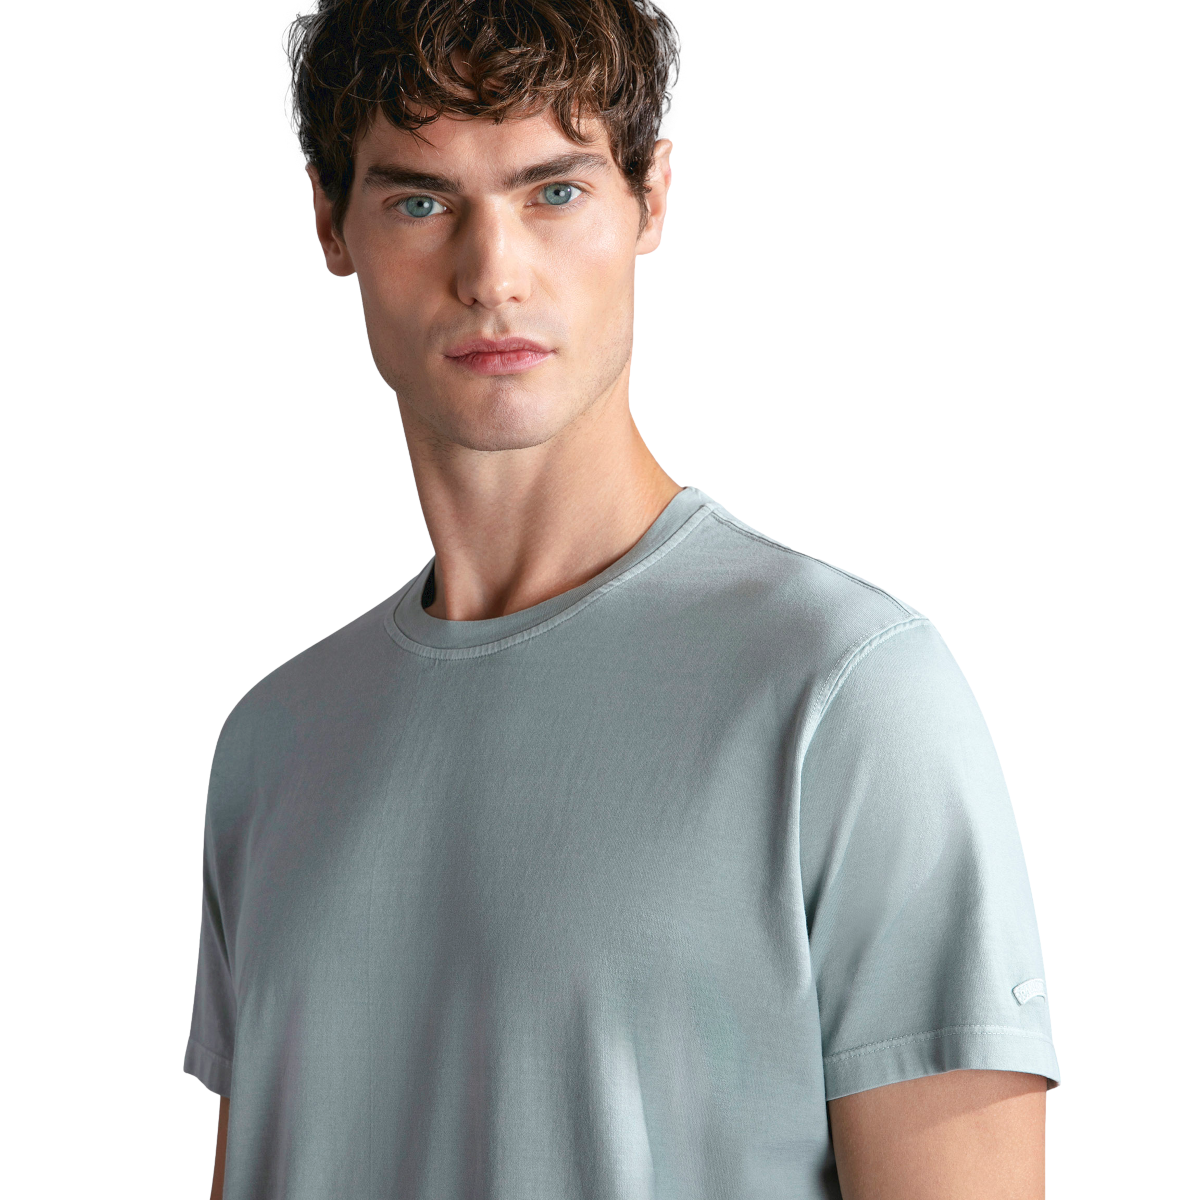 Paul & Shark GD Cotton Jersey T-Shirt 072 Ether